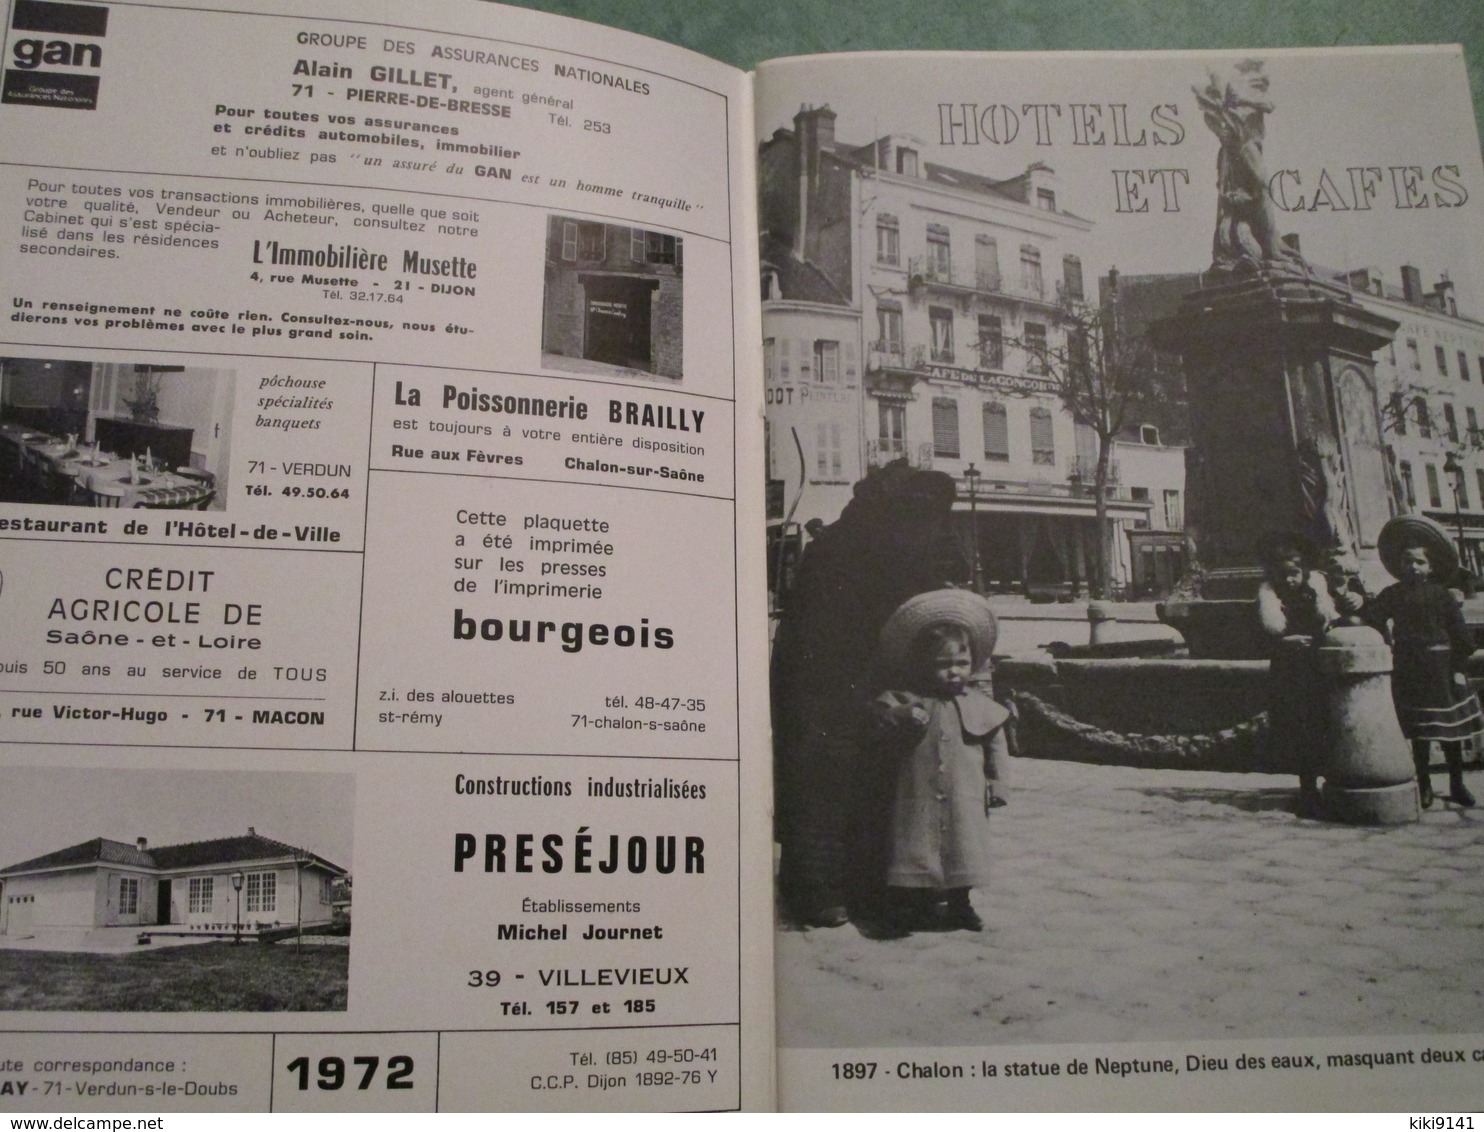 1900 - 100 Photographies Tirées De Cliches De Collection Par Jean BOULAY (68 Pages) - Livres & Catalogues